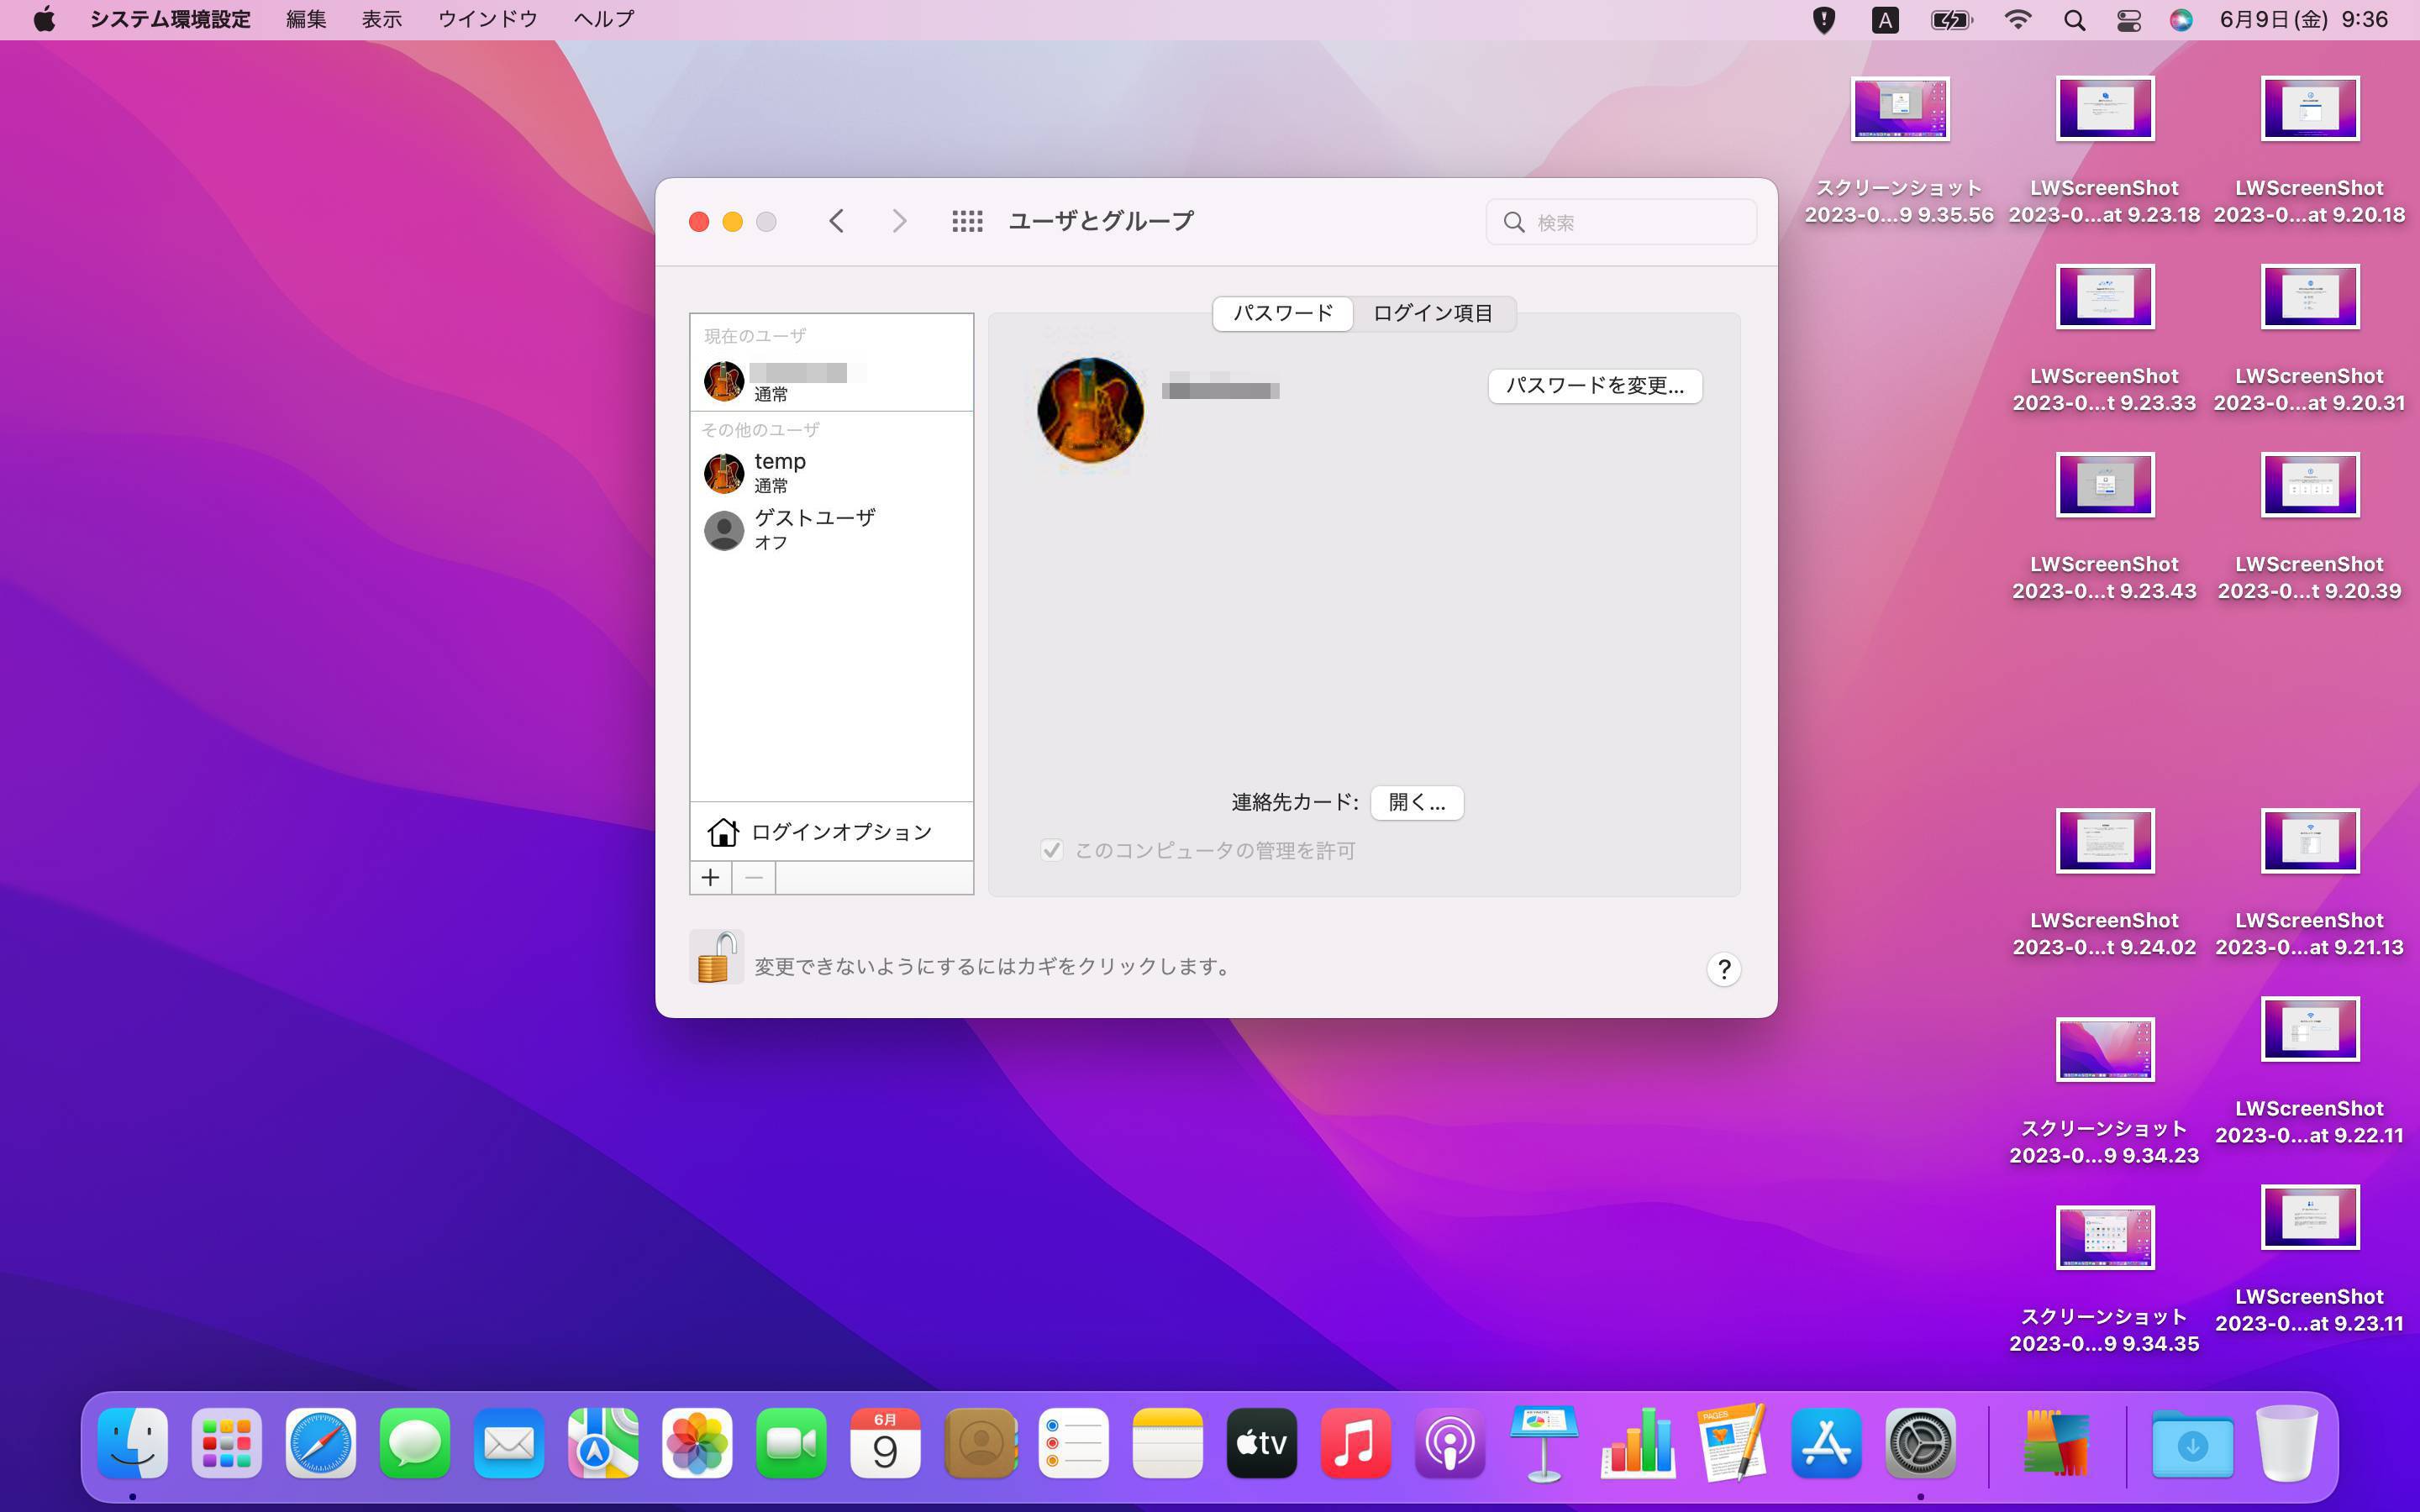 【Mac】macOSをHigh SierraからMontereyにアップグレード